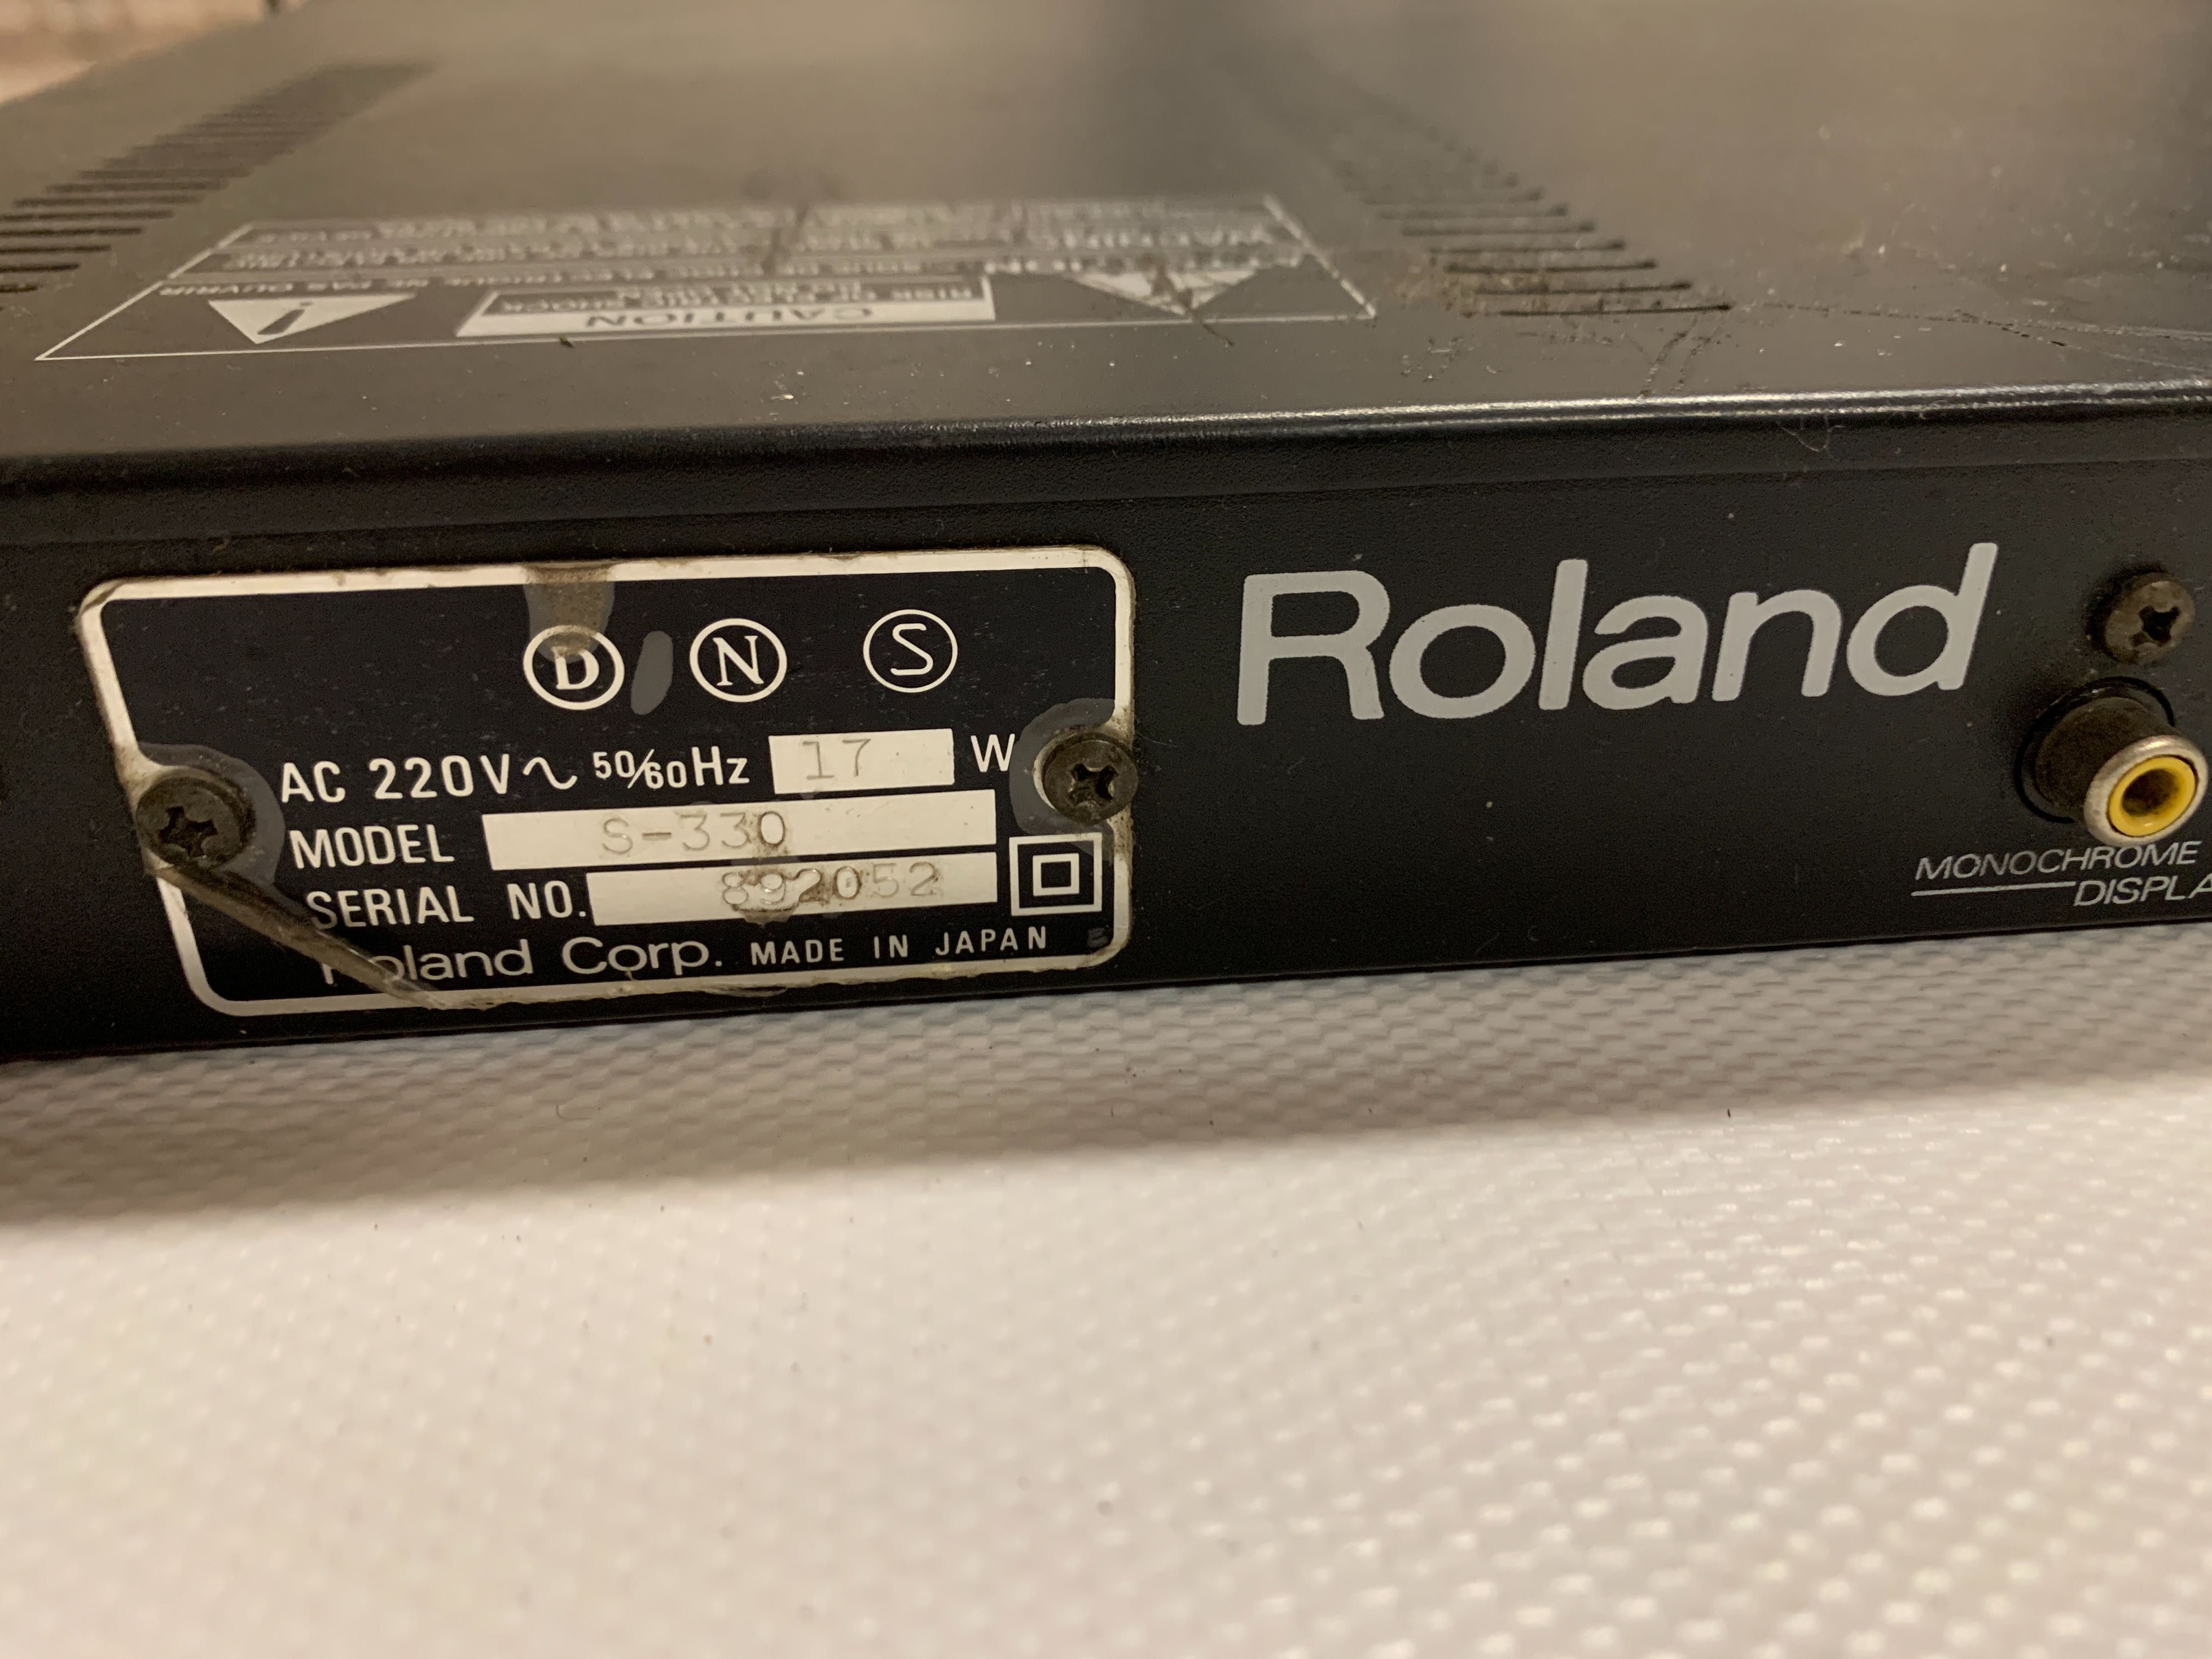 Roland Sampler S-330+Director S Software